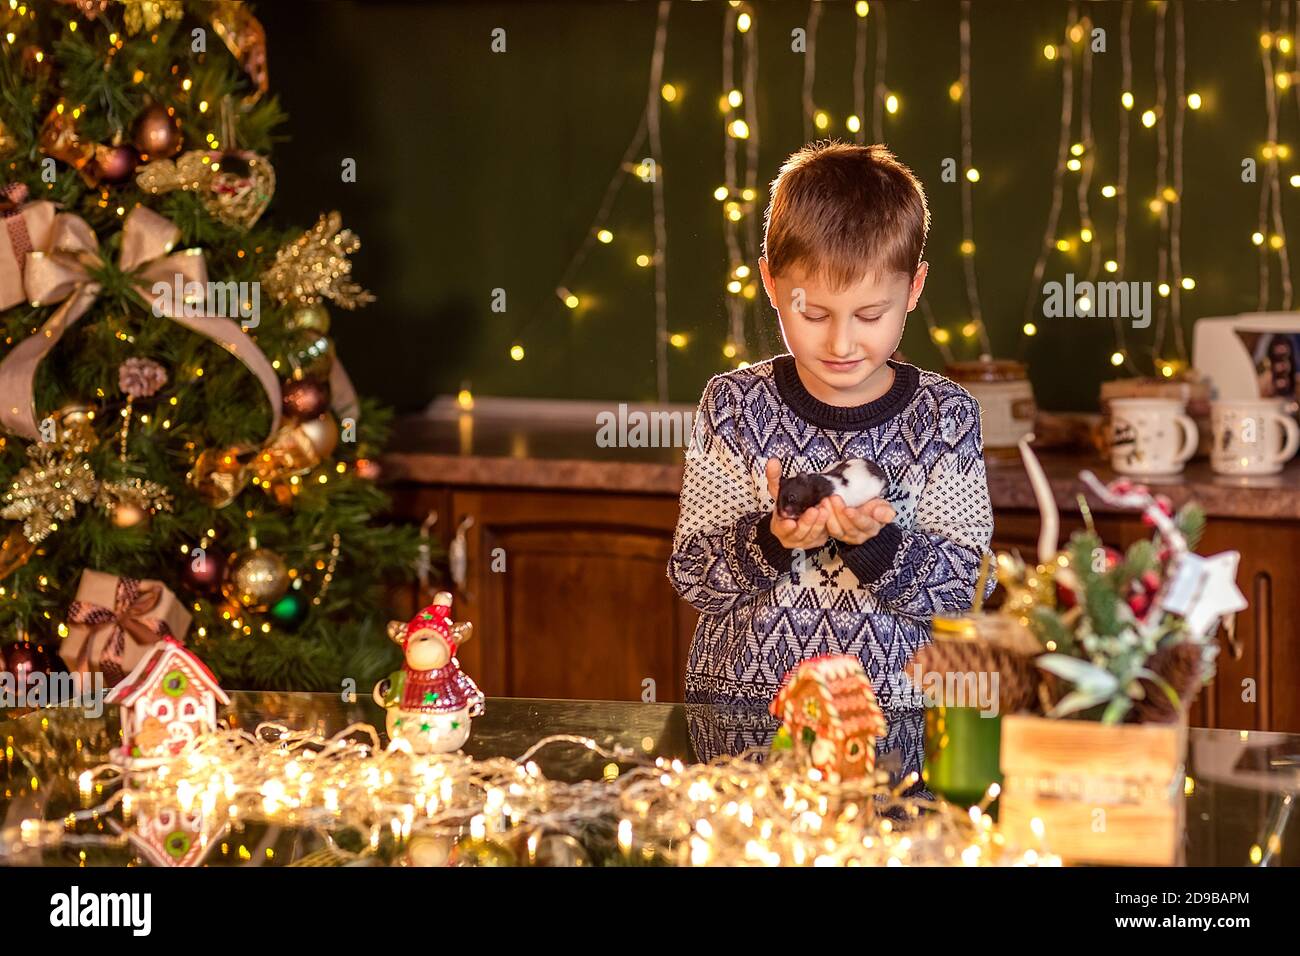 Ein Junge sitzt an einem Tisch in einer dekorierten Weihnachtsküche. Hält ein Haustier Hamster oder Maus. Gemütliche Winterabende zu Hause. Konzept von Weihnachten und Neujahr Stockfoto